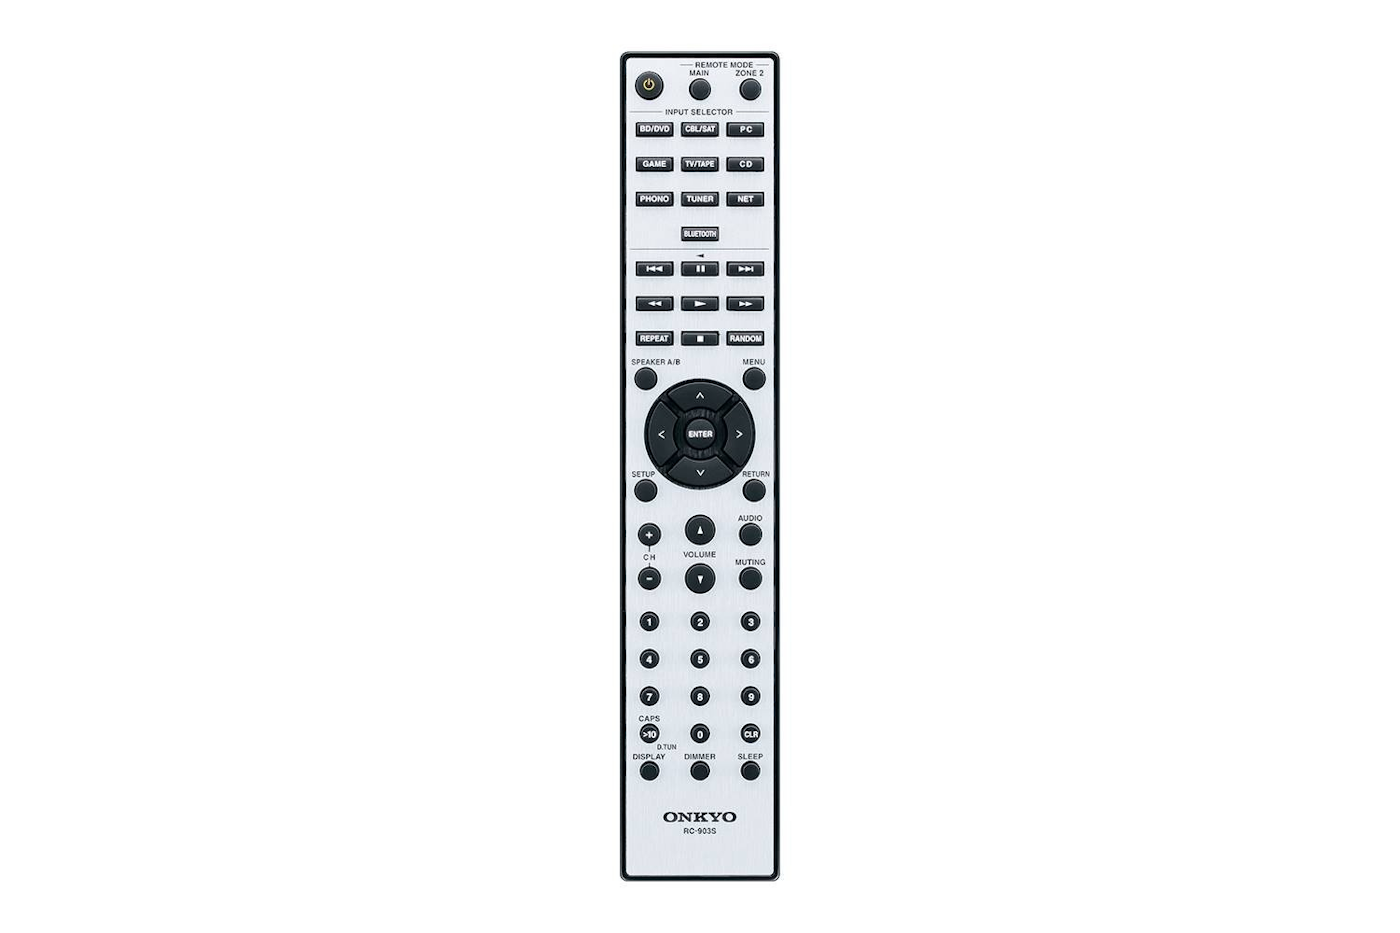 Onkyo TX-8270 Remote